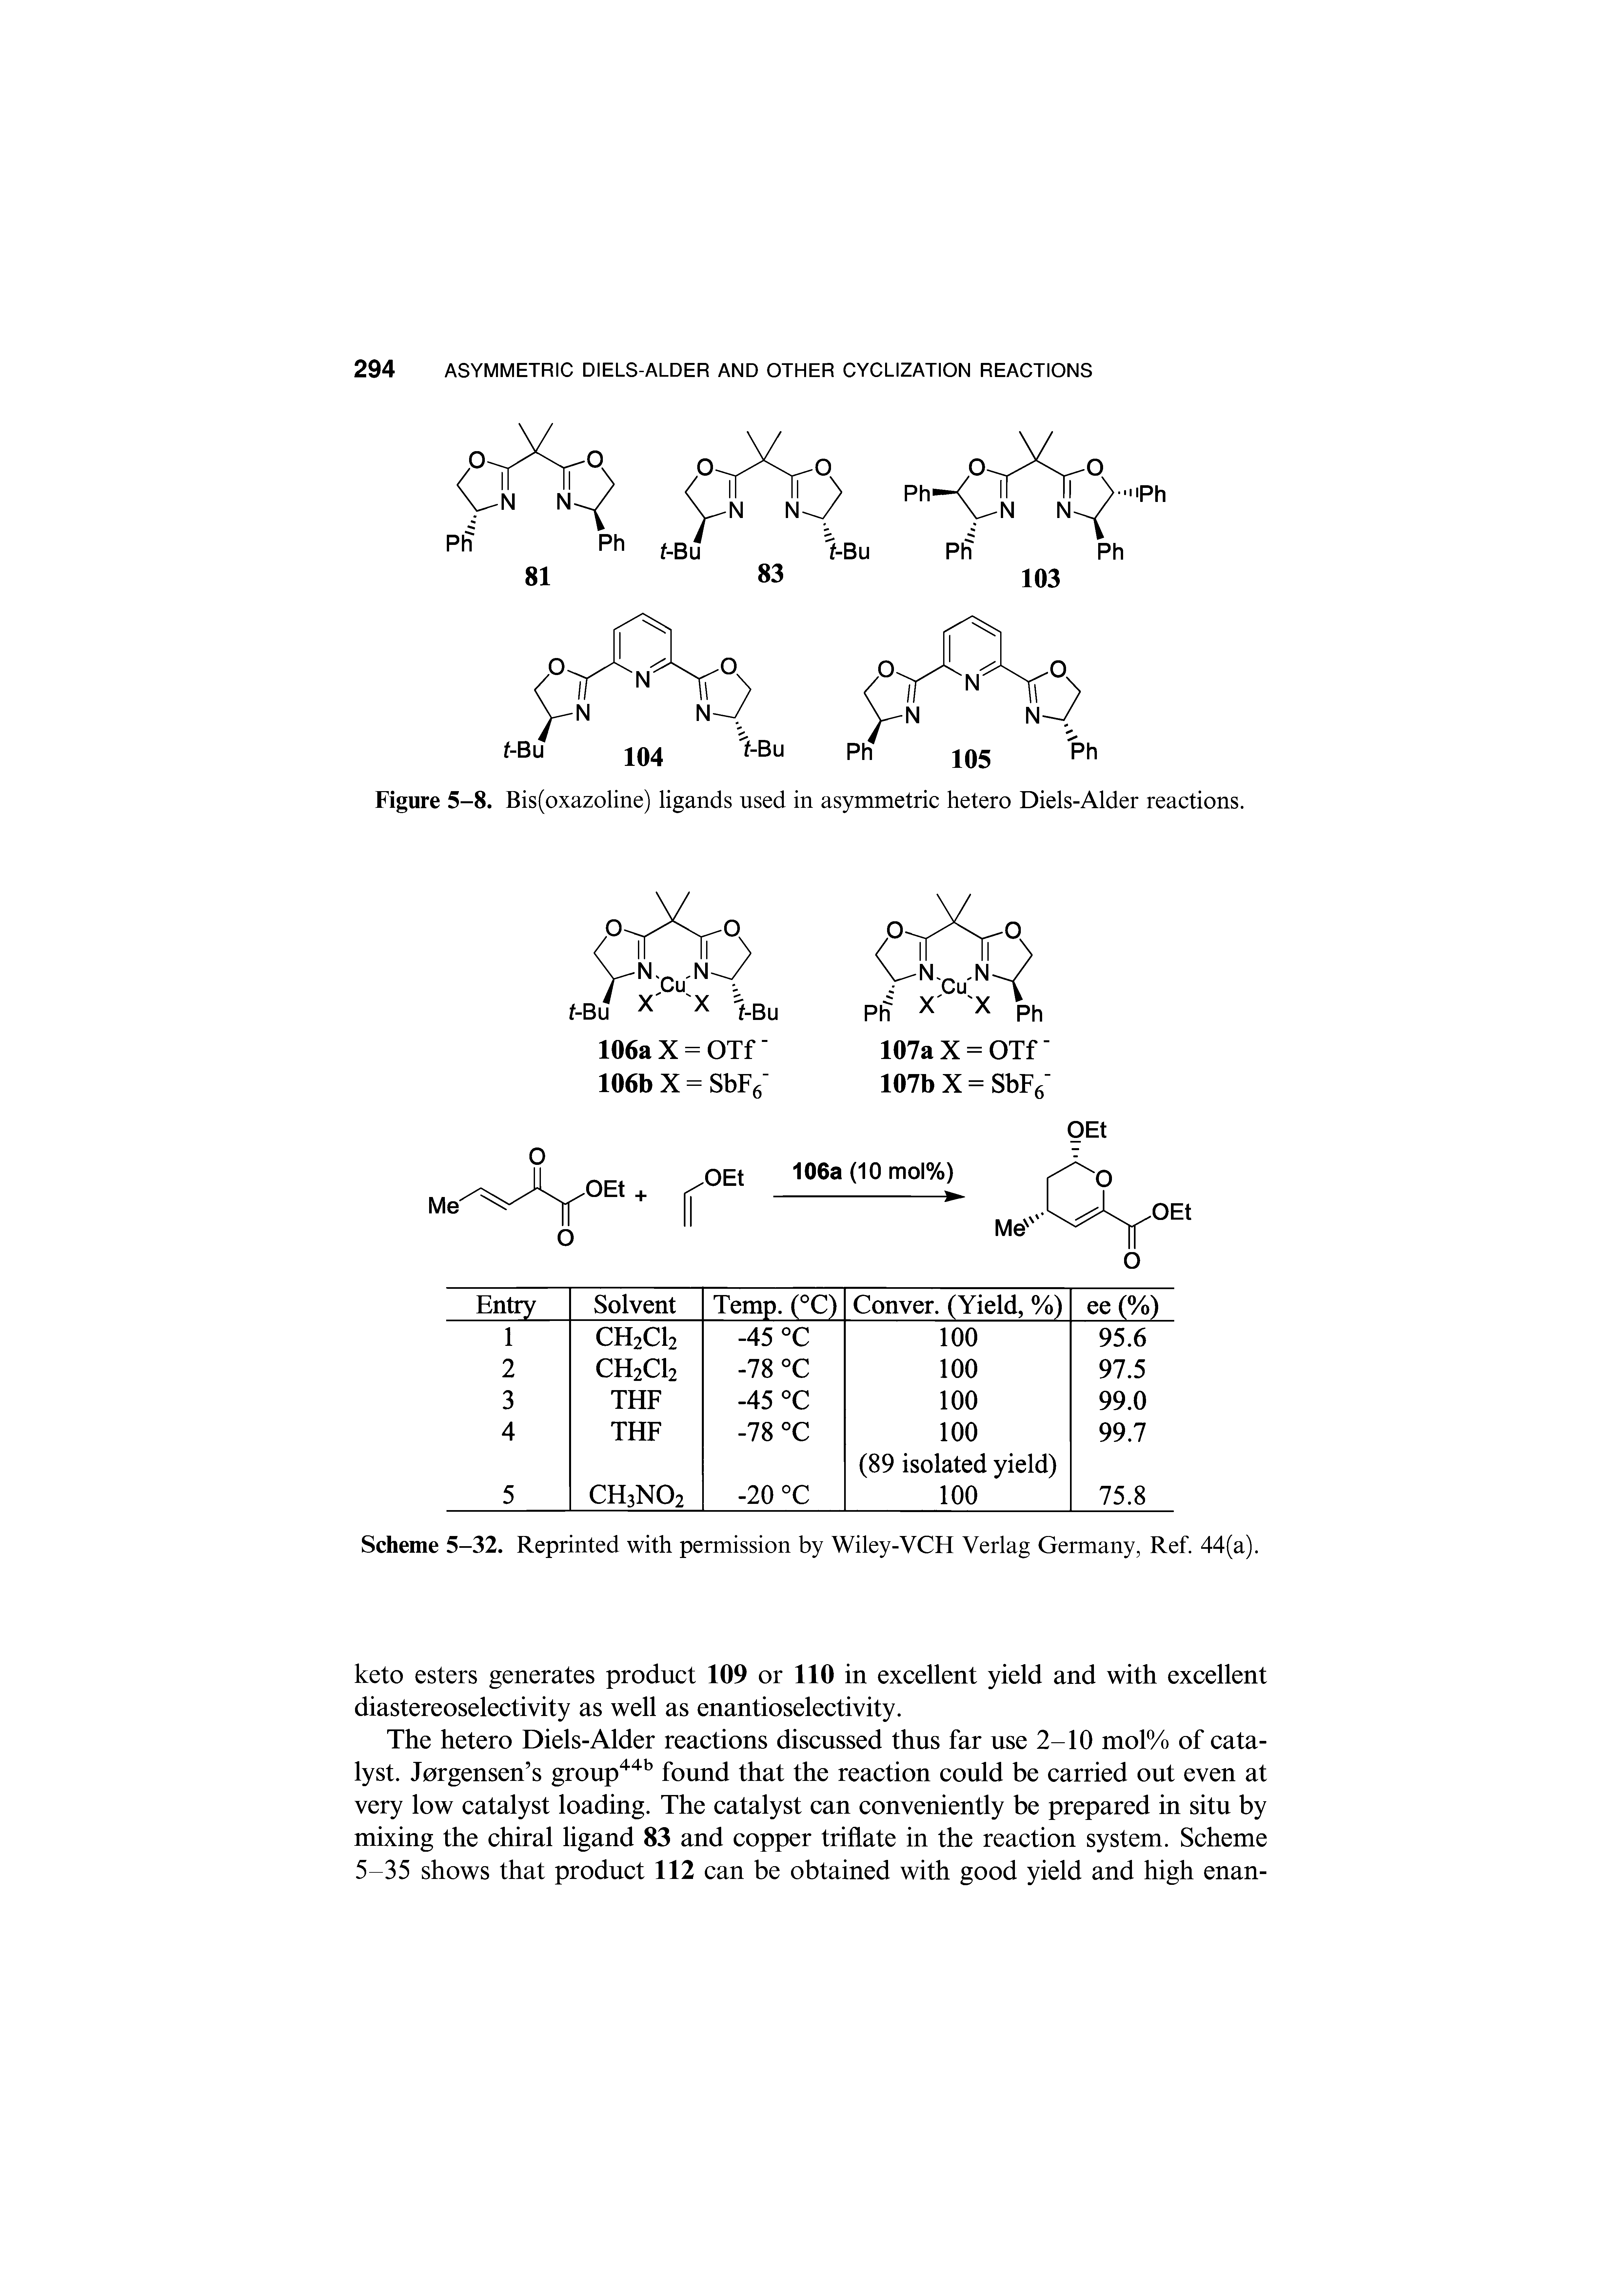 Figure 5-8. Bis(oxazoline) ligands used in asymmetric hetero Diels-Alder reactions.